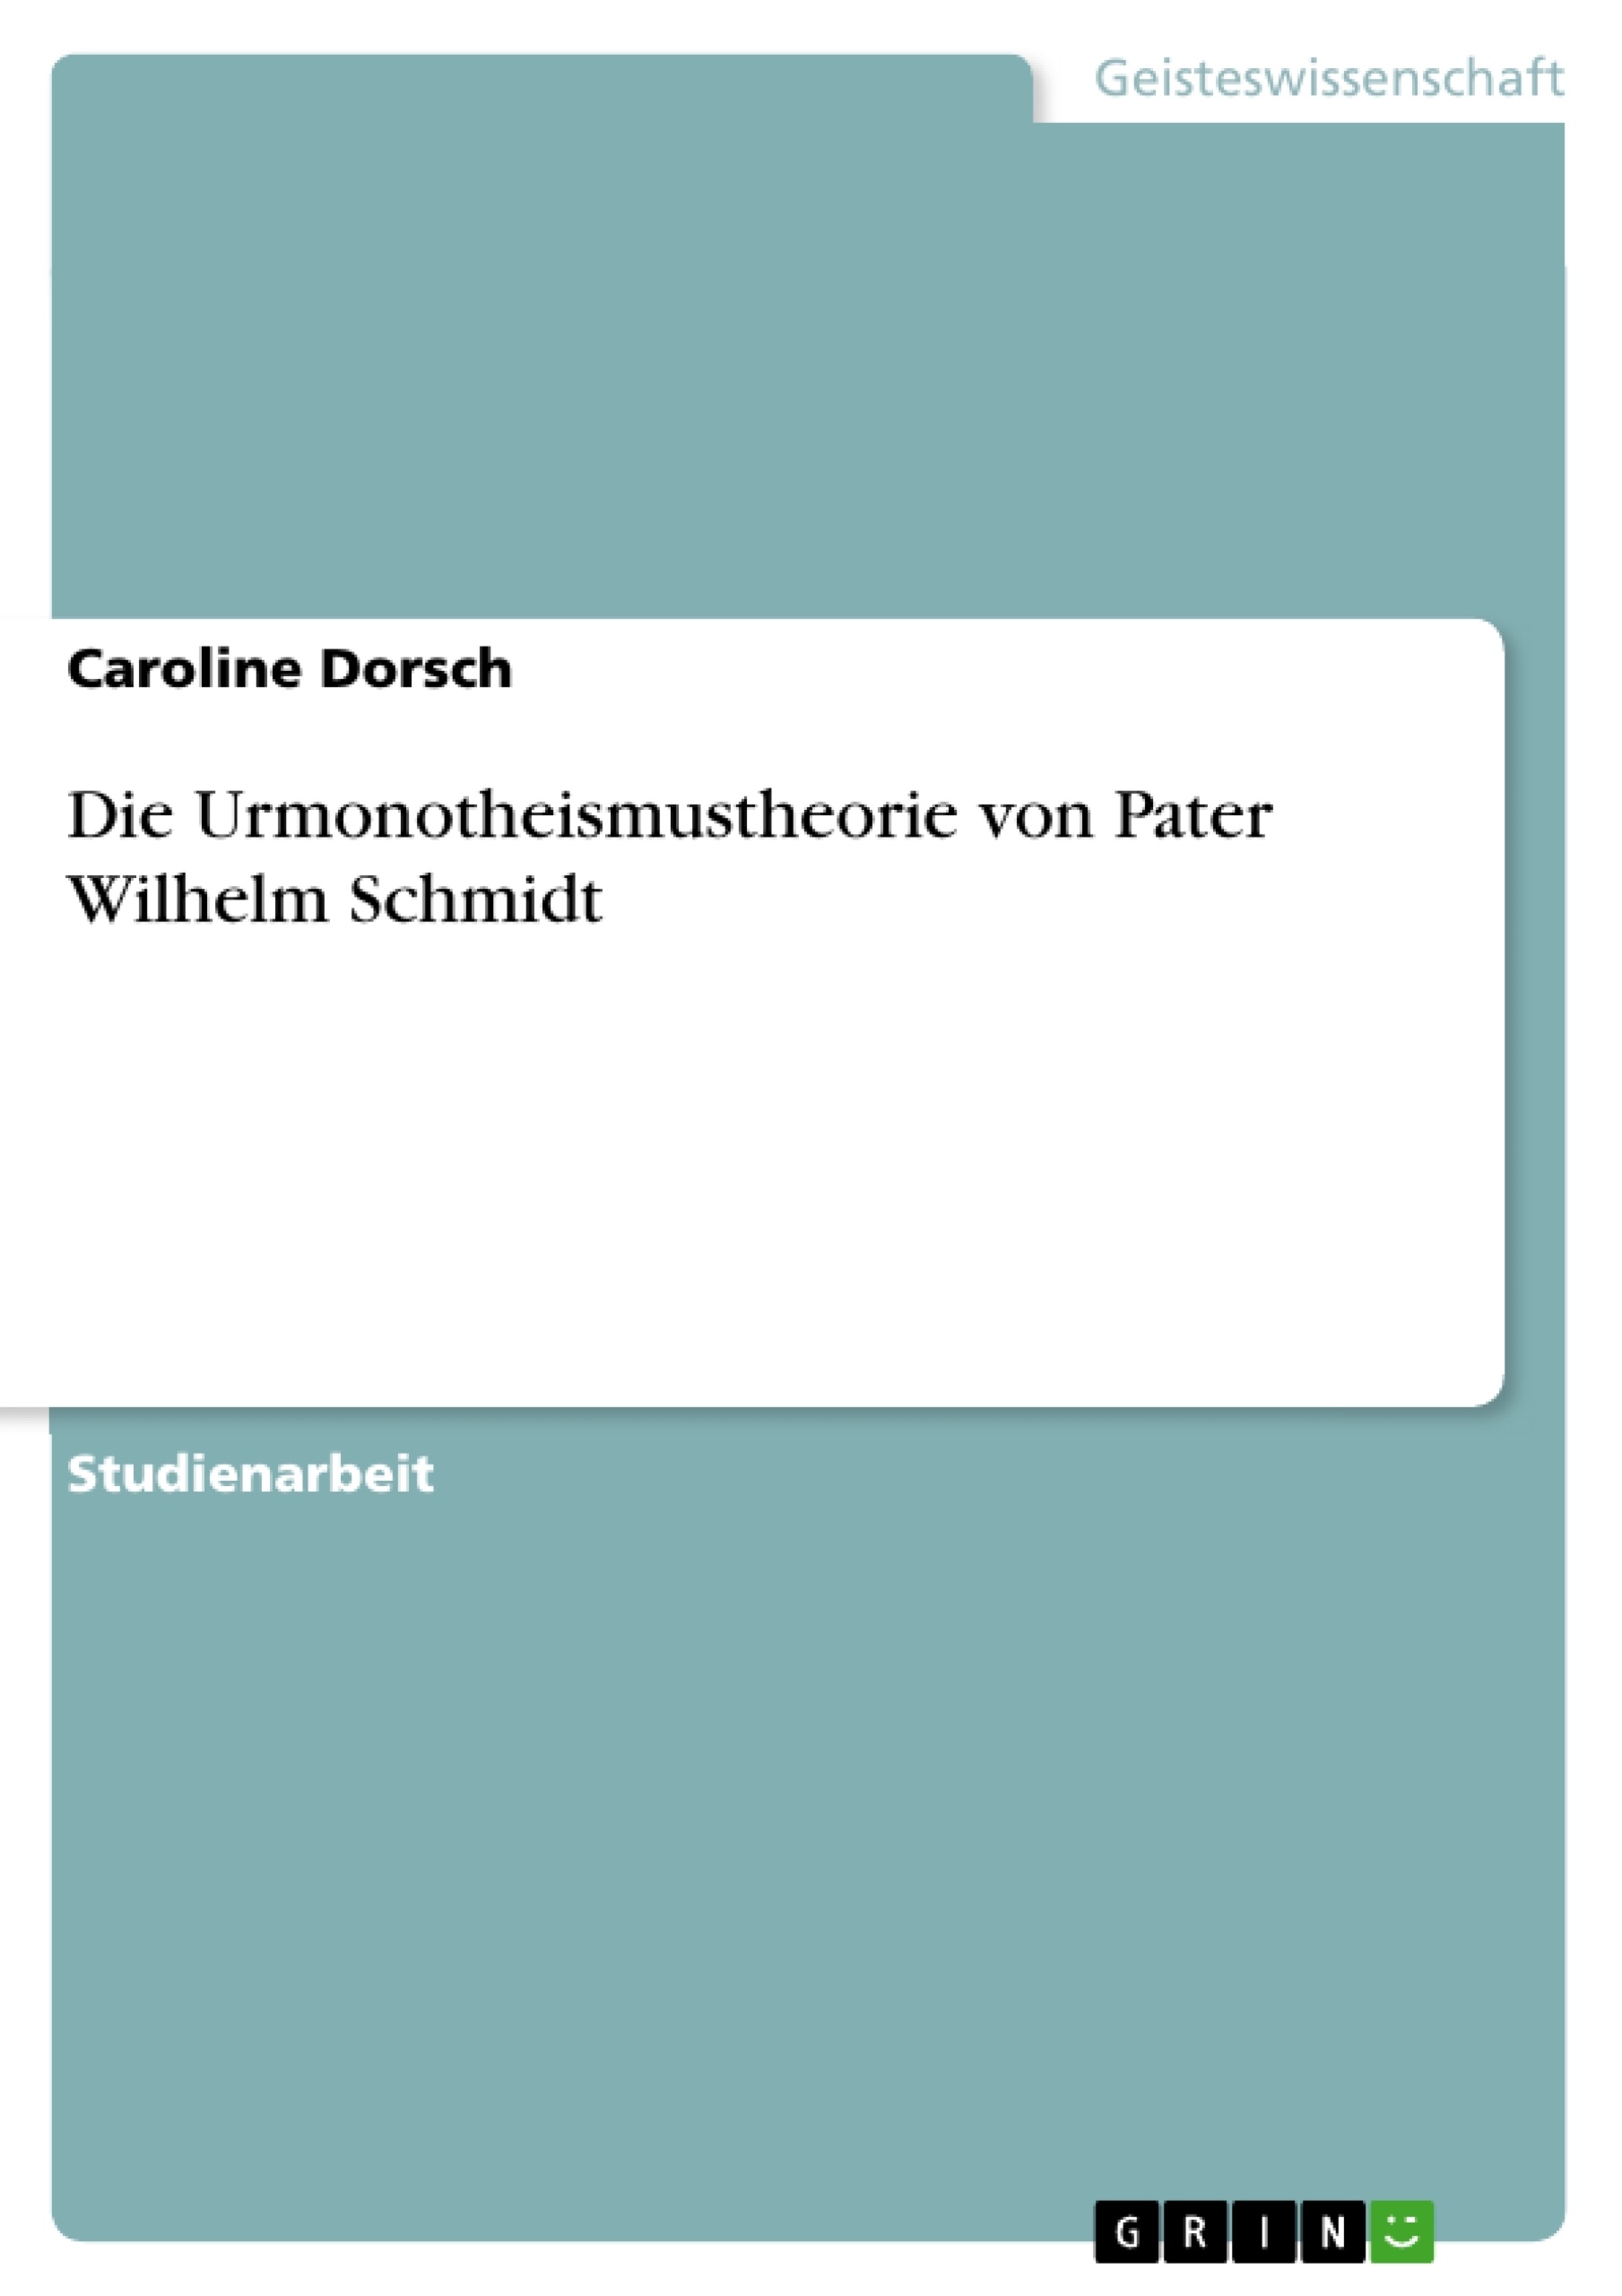 Title: Die Urmonotheismustheorie von Pater Wilhelm Schmidt